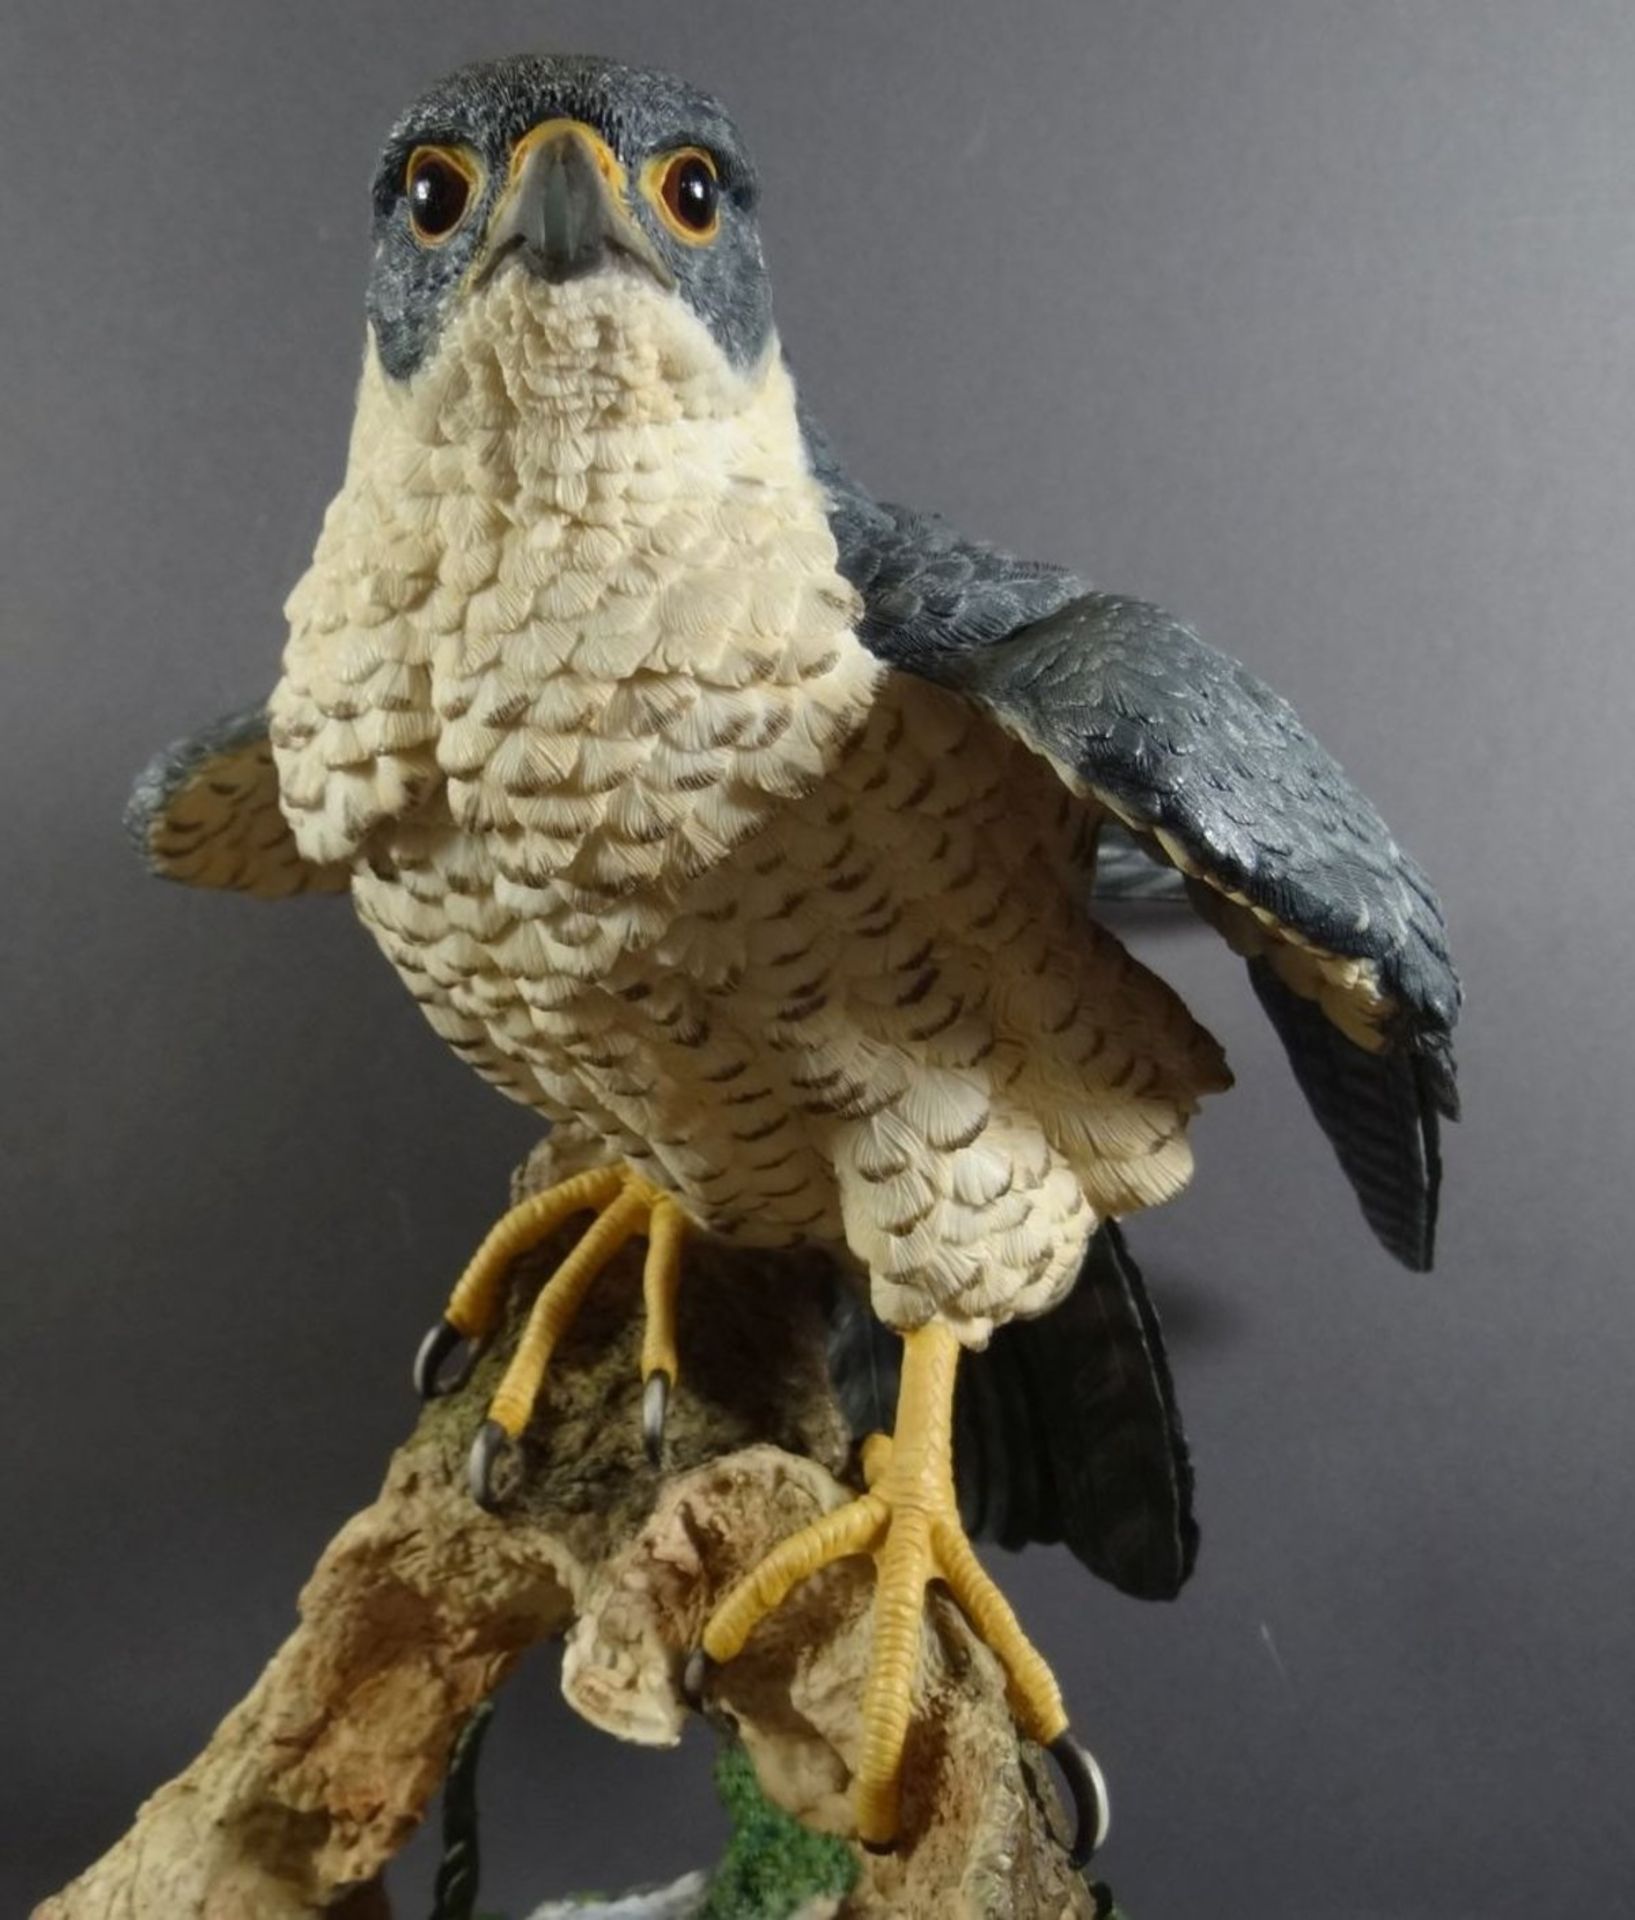 grosser Raubvogel von Goebel "Lord of the skies" handcrafted in England, H-40 cm, B-32 cm - Bild 3 aus 10